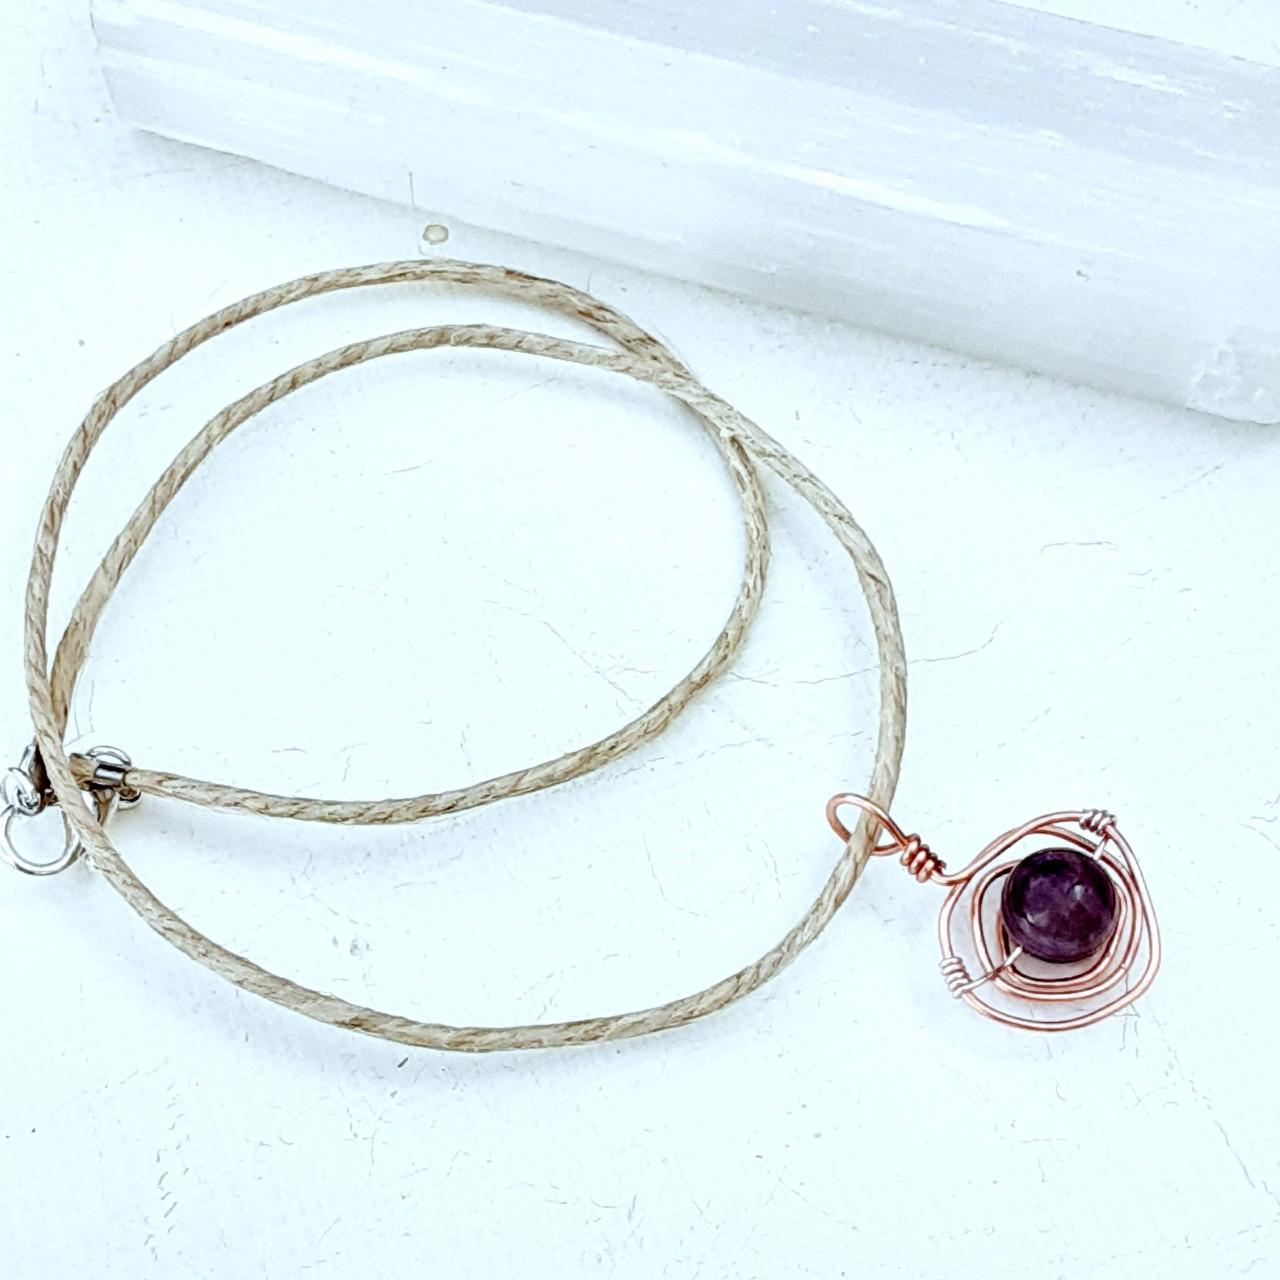 Product Image 2 - Hemp choker necklace
Copper swirl setting